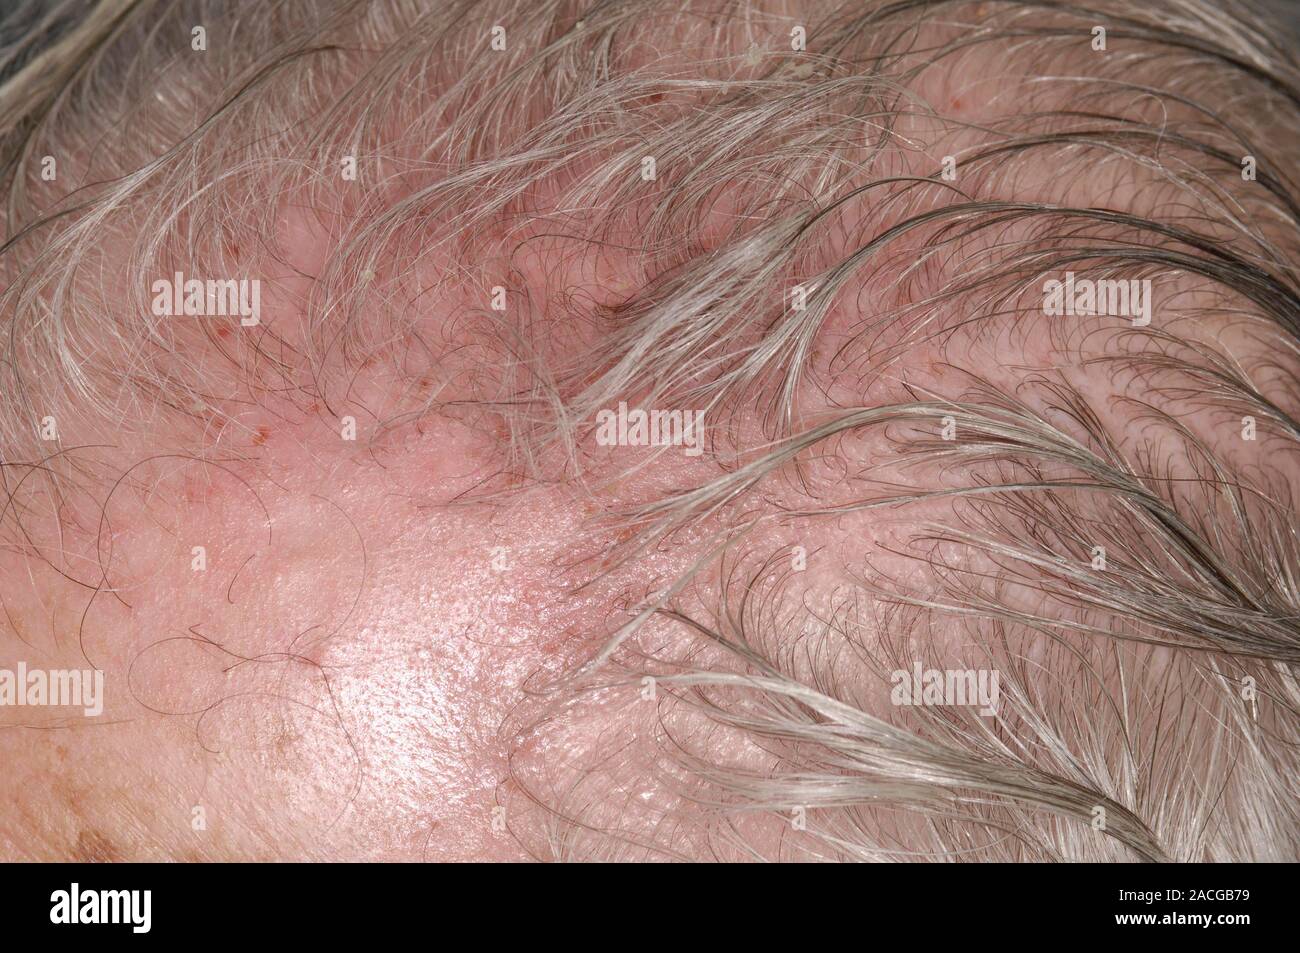 La irritación del cuero cabelludo en un paciente masculino de 81 años de  edad, después de un herpes zóster erupción (neuralgia post herpética). La  culebrilla o herpes zoster es una enfermedad caus